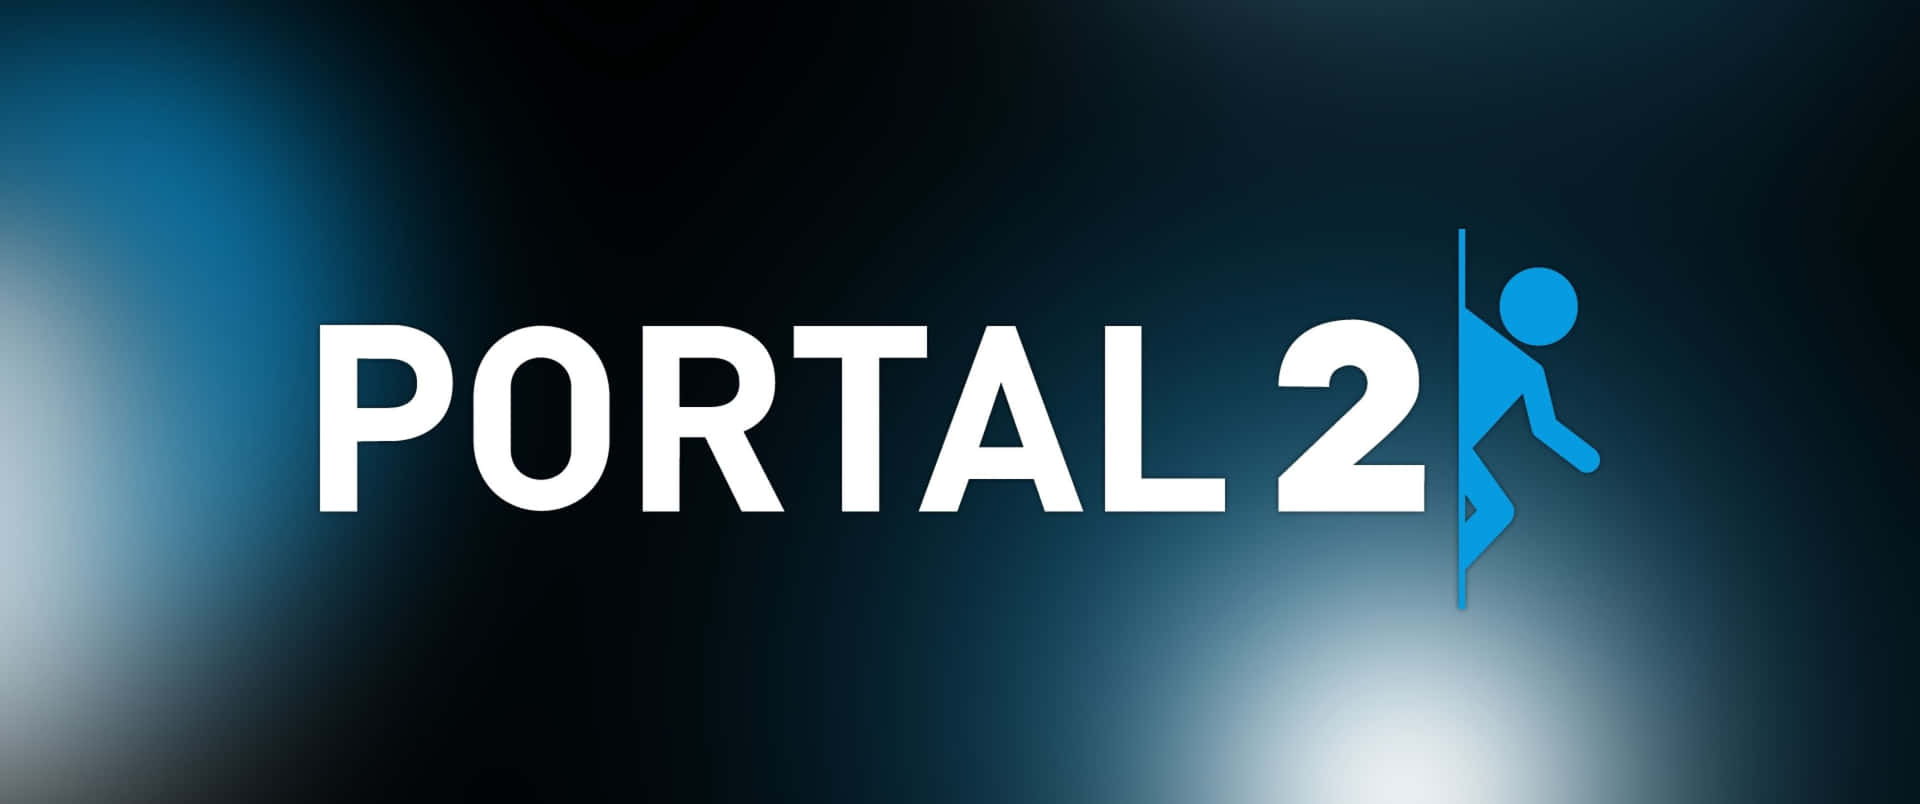 Portal2 - En Blå Logotyp Med En Man På Den.